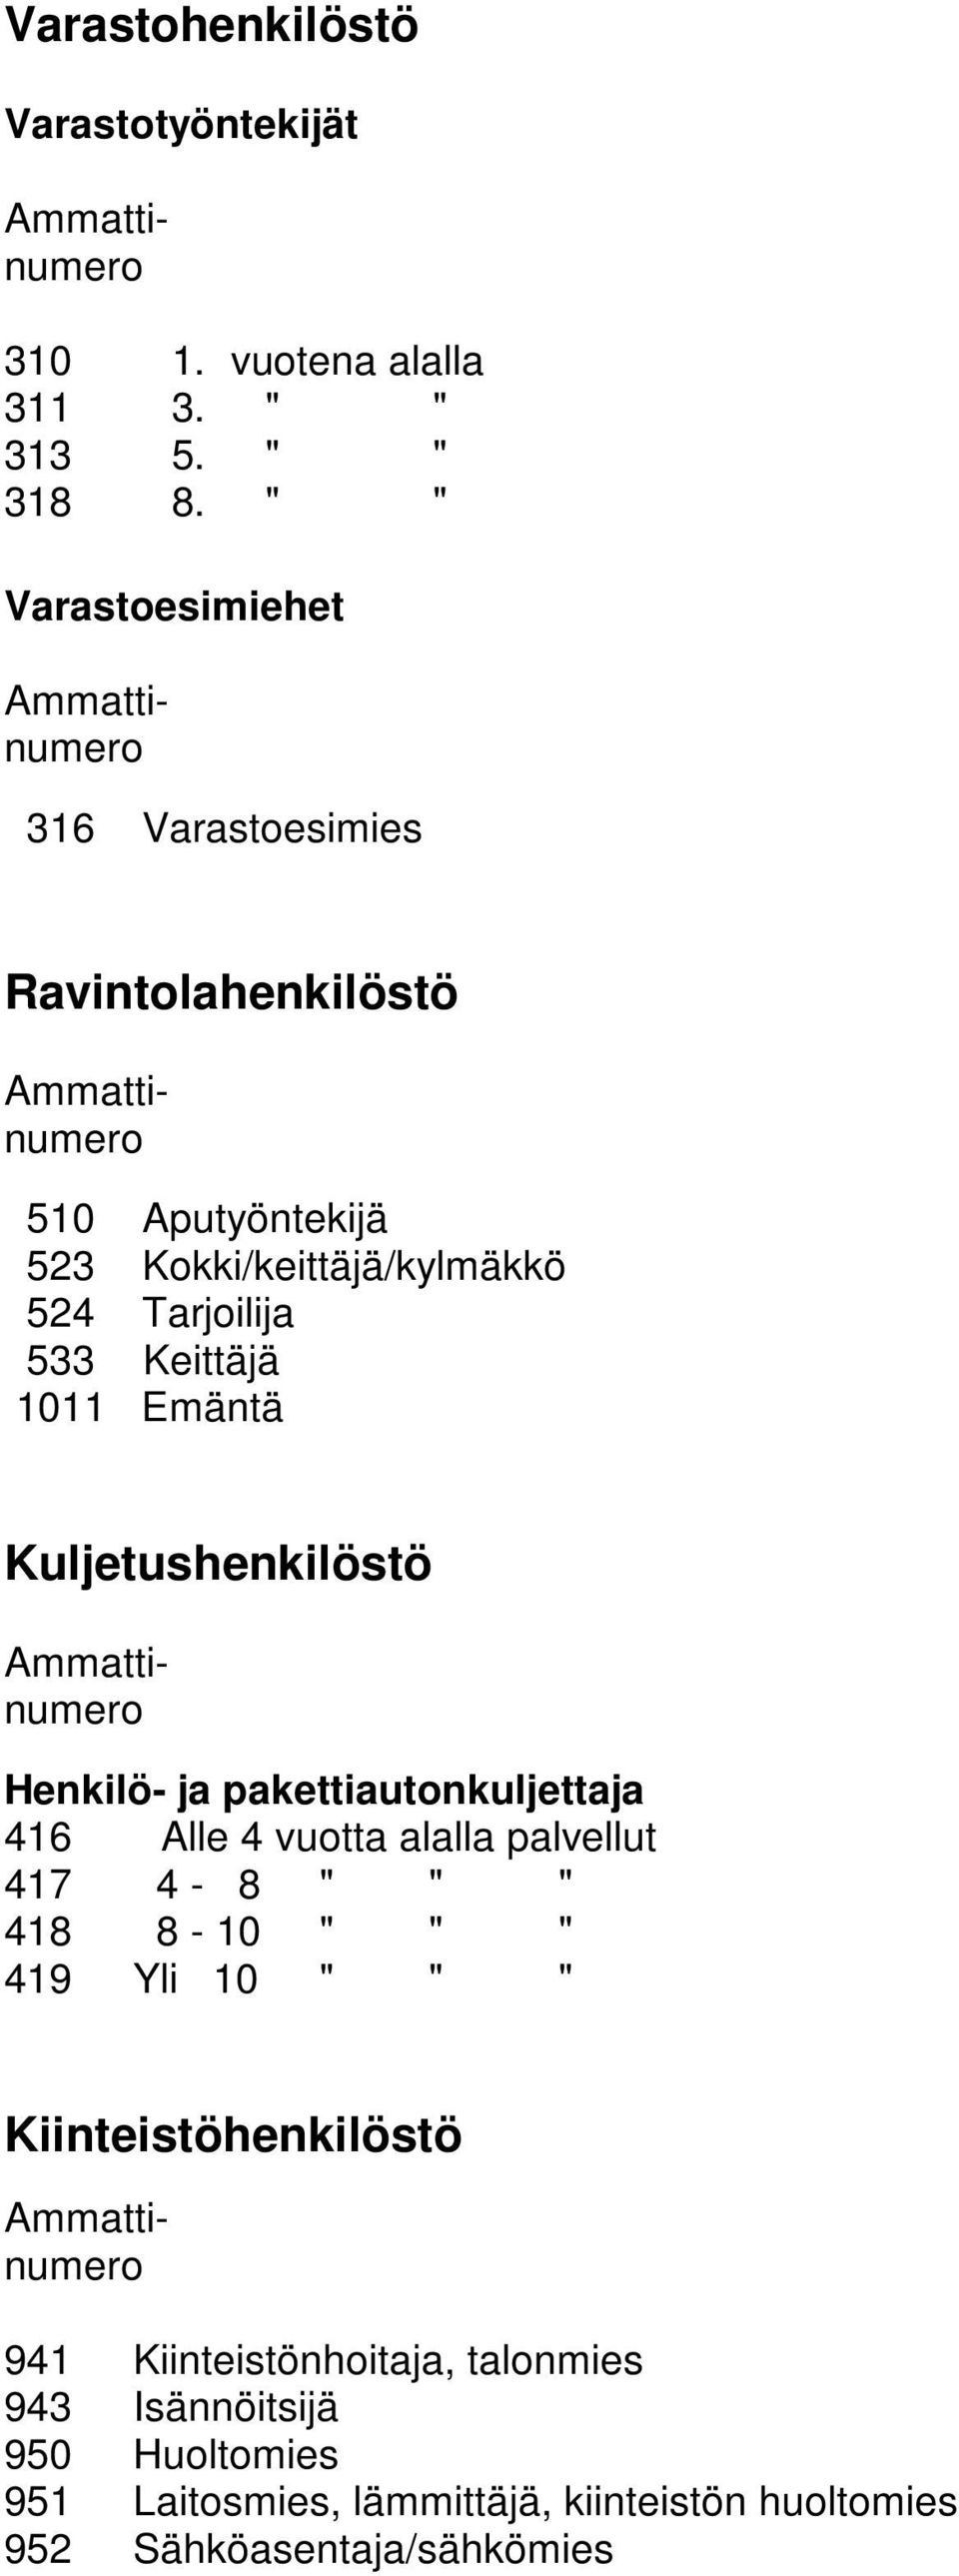 1011 Emäntä Kuljetushenkilöstö Henkilö- ja pakettiautonkuljettaja 416 Alle 4 vuotta alalla palvellut 417 4-8 " " " 418 8-10 " " " 419